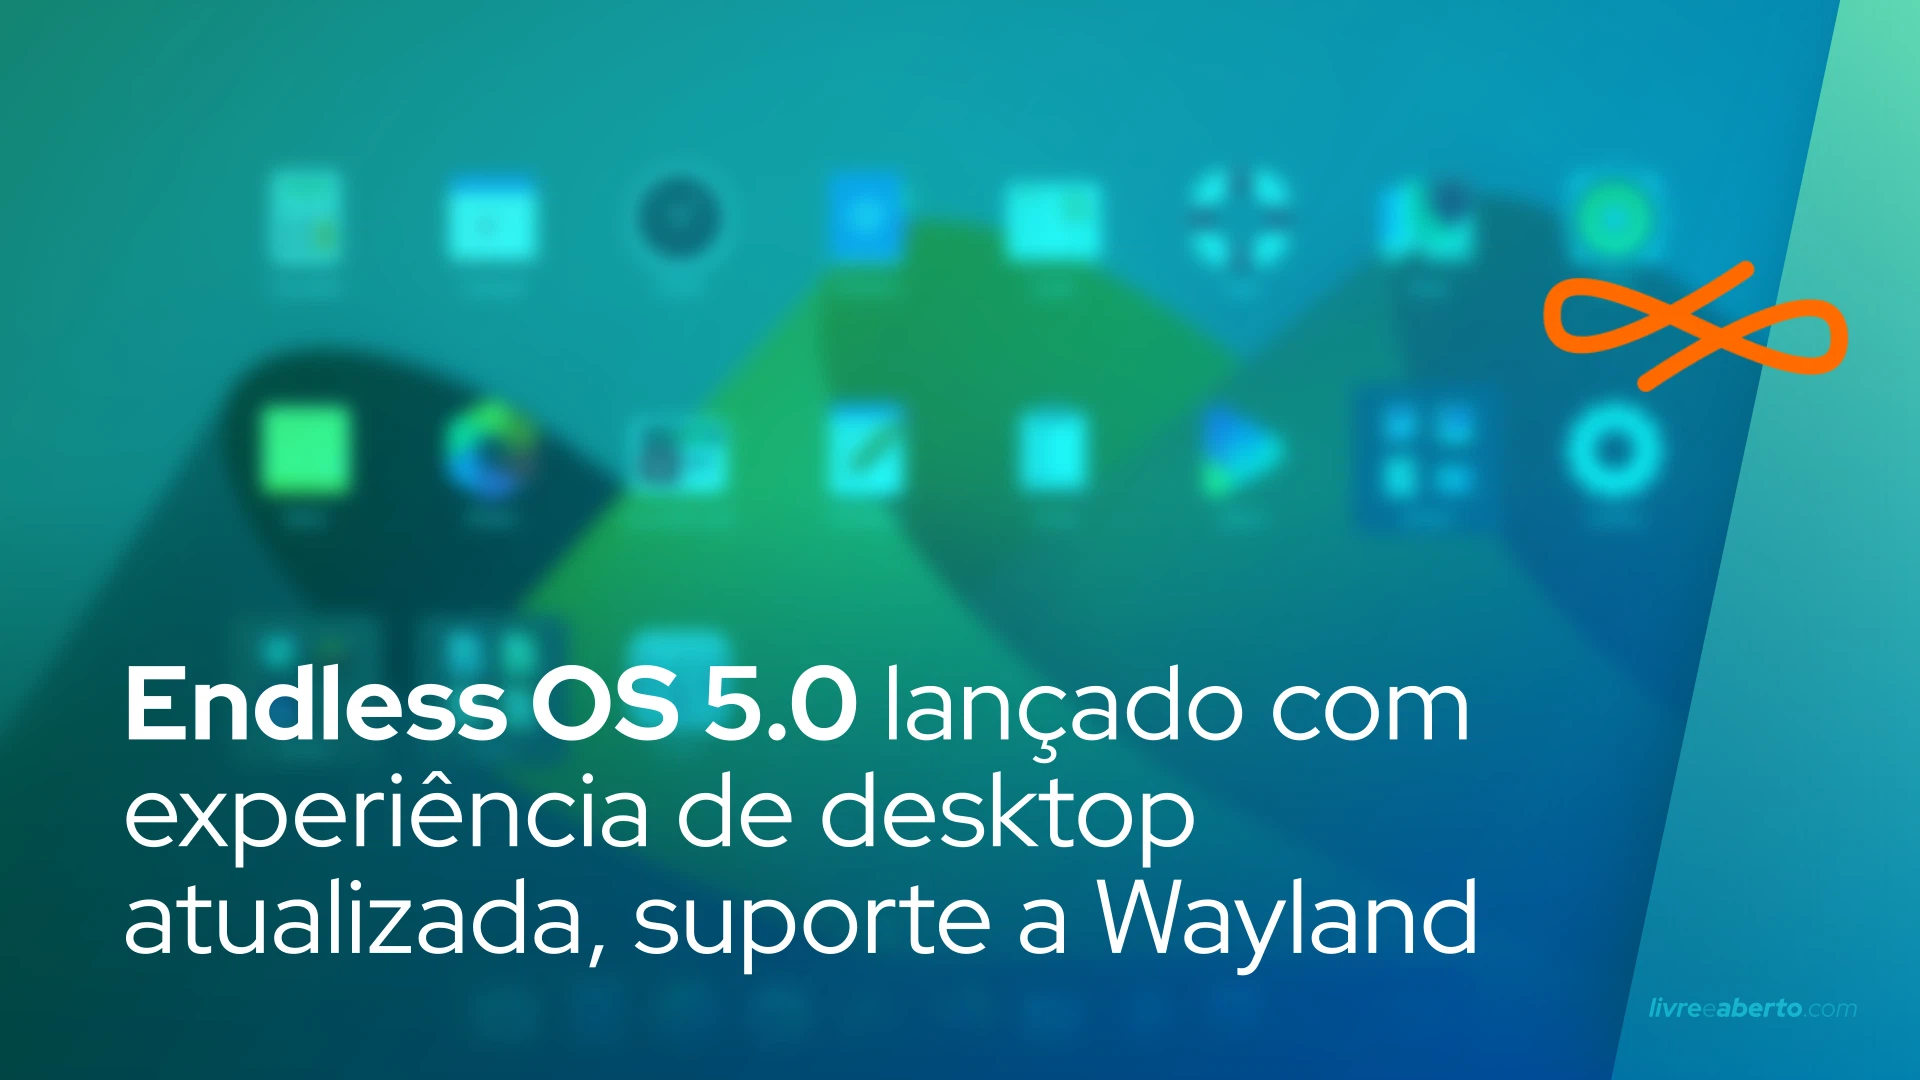 Endless OS 5.0 lançado com experiência de desktop atualizada, suporte a Wayland